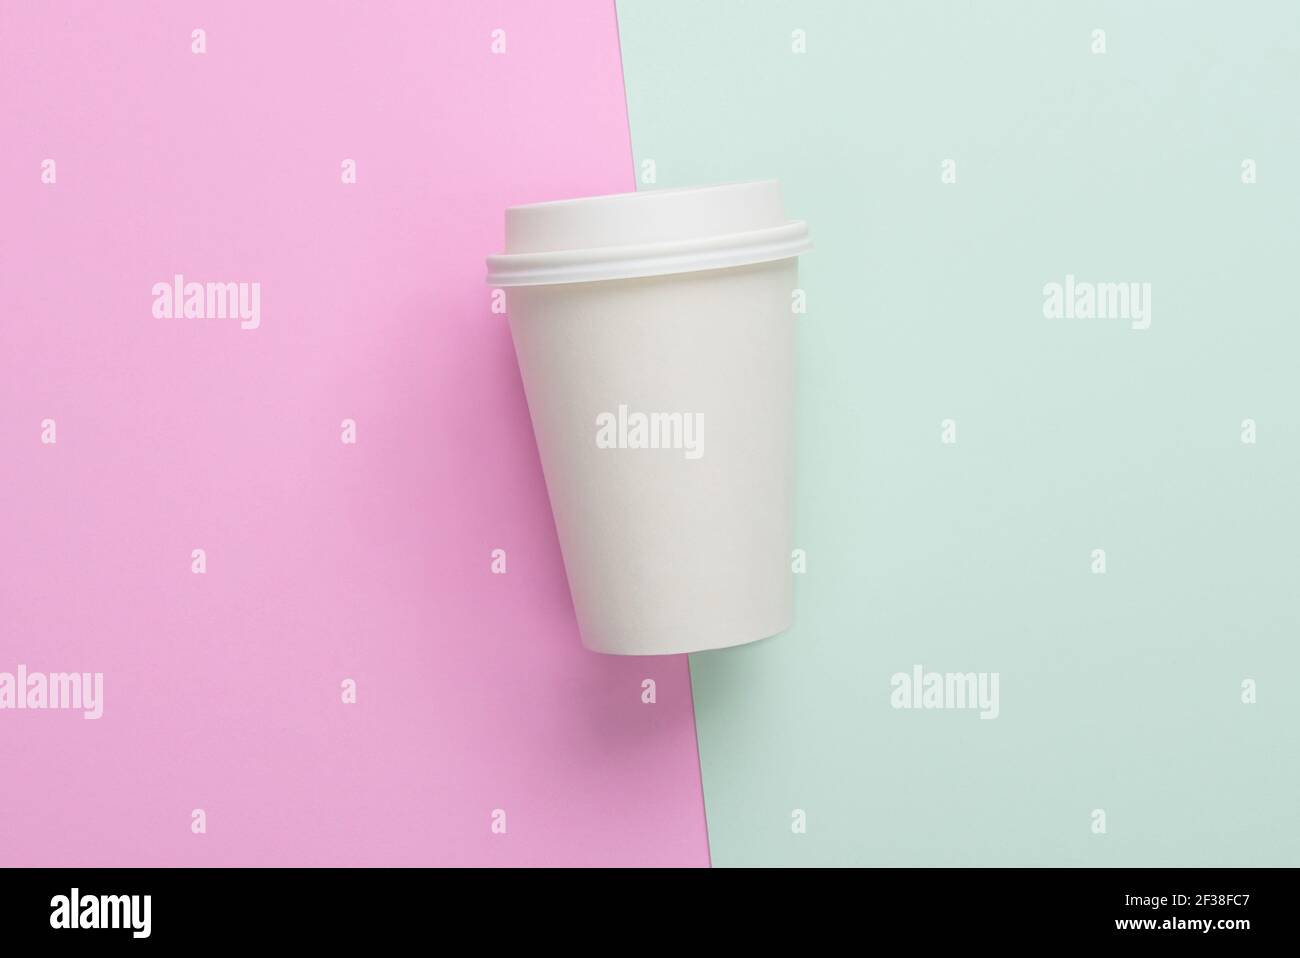 À emporter à usage unique (à emporter) tasse à café sur fond bleu clair et rose Banque D'Images